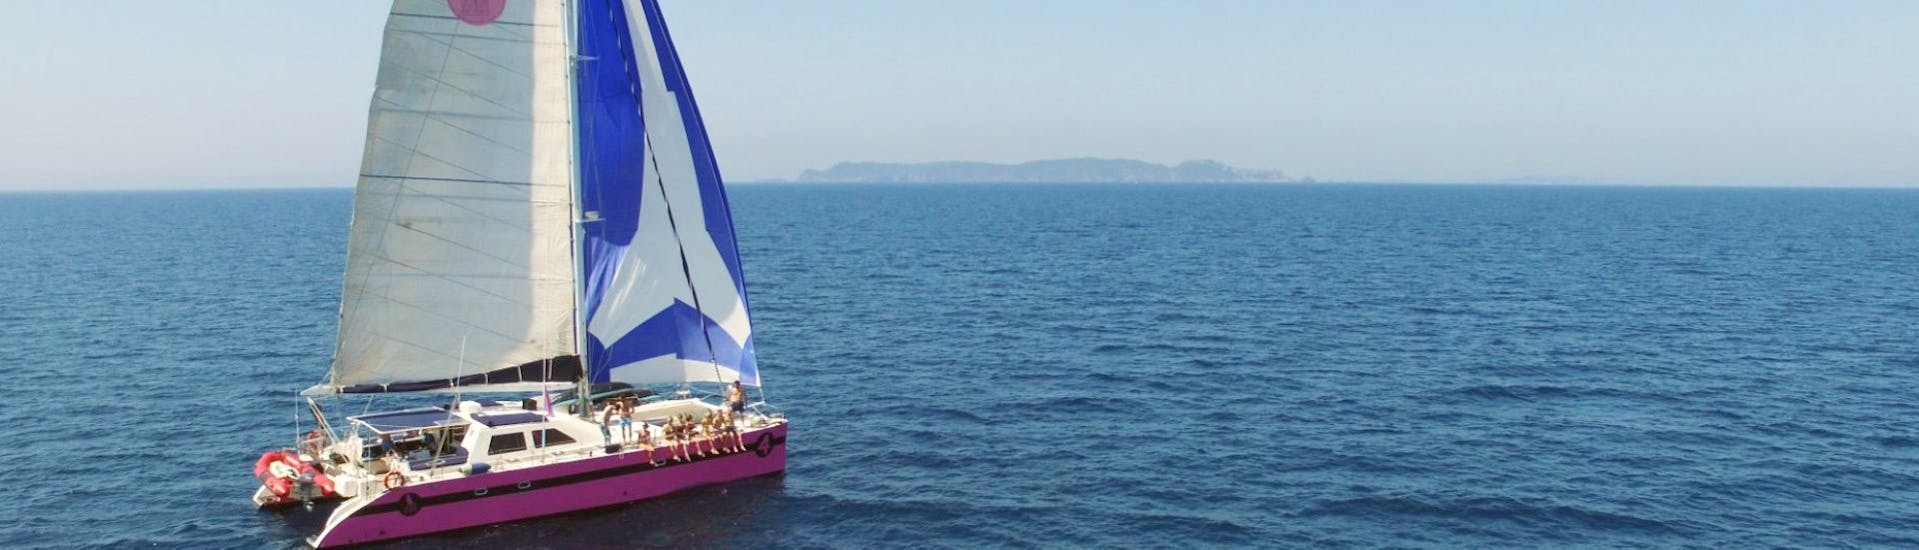 Vistas durante el paseo en barco por el golfo de Morbihan con Caseneuve Maxi Catamaran.